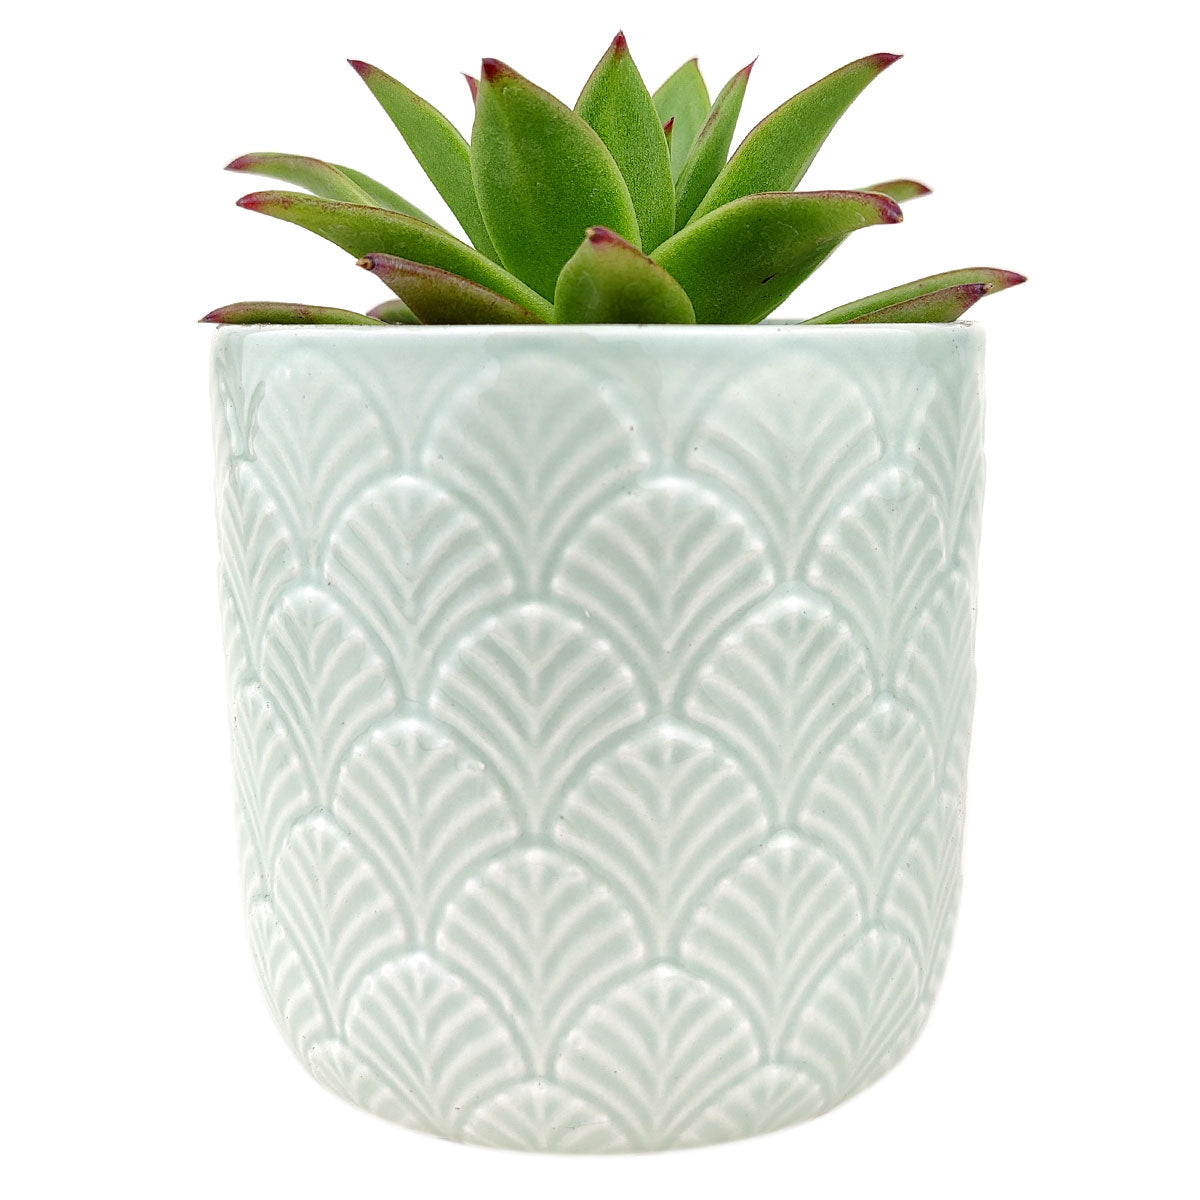 Mint Fan Pot for sale, ceramic vase for home decor, ceramic succulent and cactus pots for sale, Succulent gift ideas